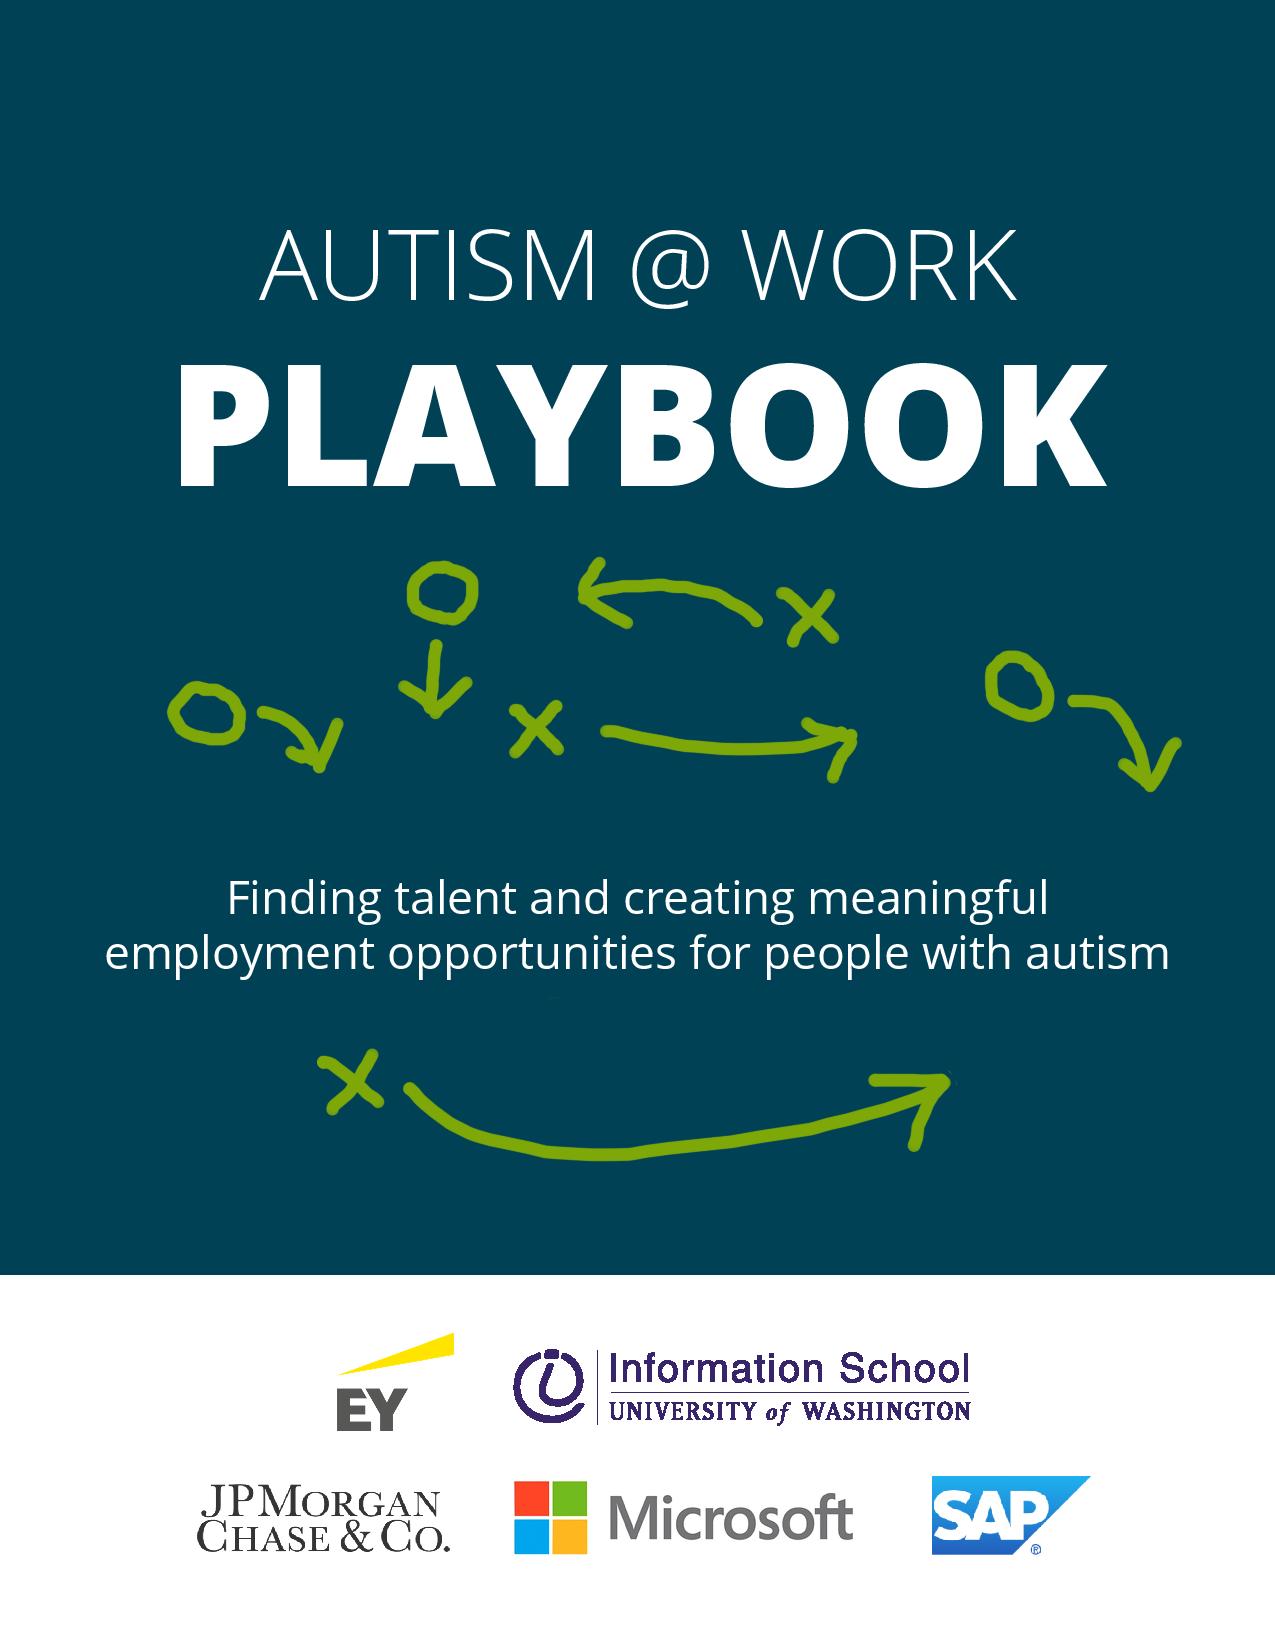 iSchool’s Hala Annabi creates ‘Autism @ Work Playbook’ by Peter Kelley